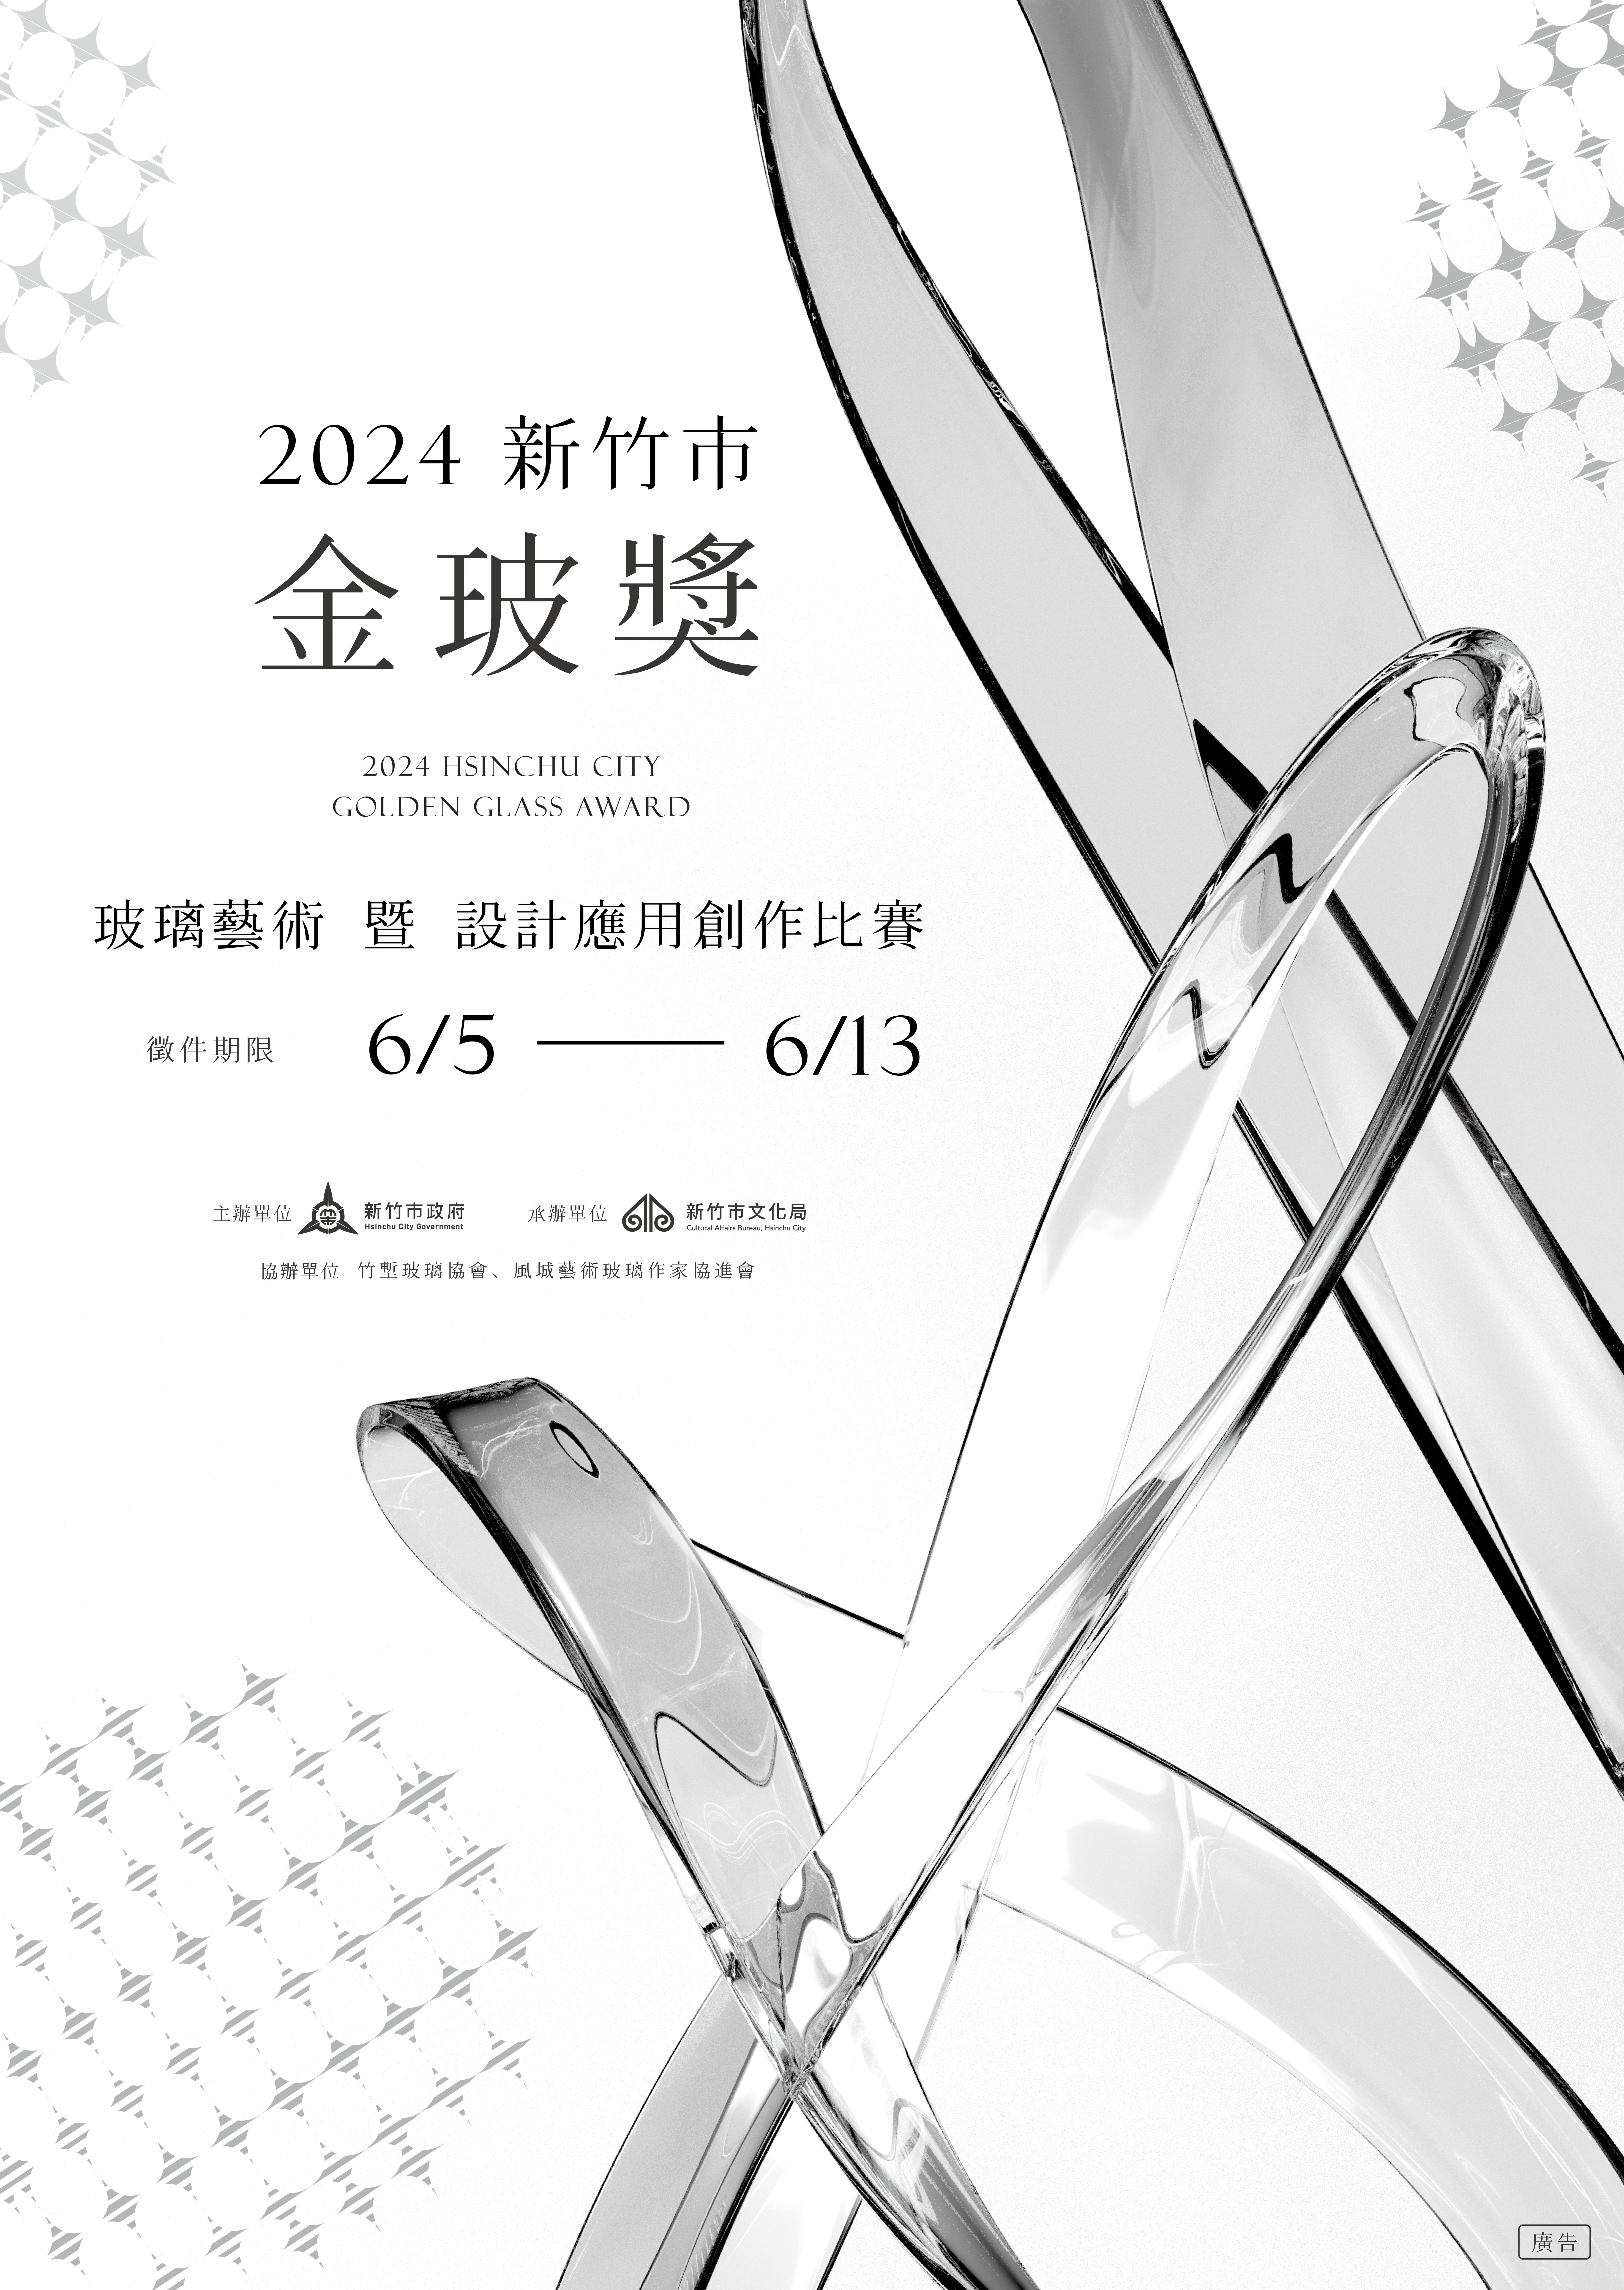 2024新竹市金玻獎-玻璃藝術暨設計應用創作比賽-初選徵件